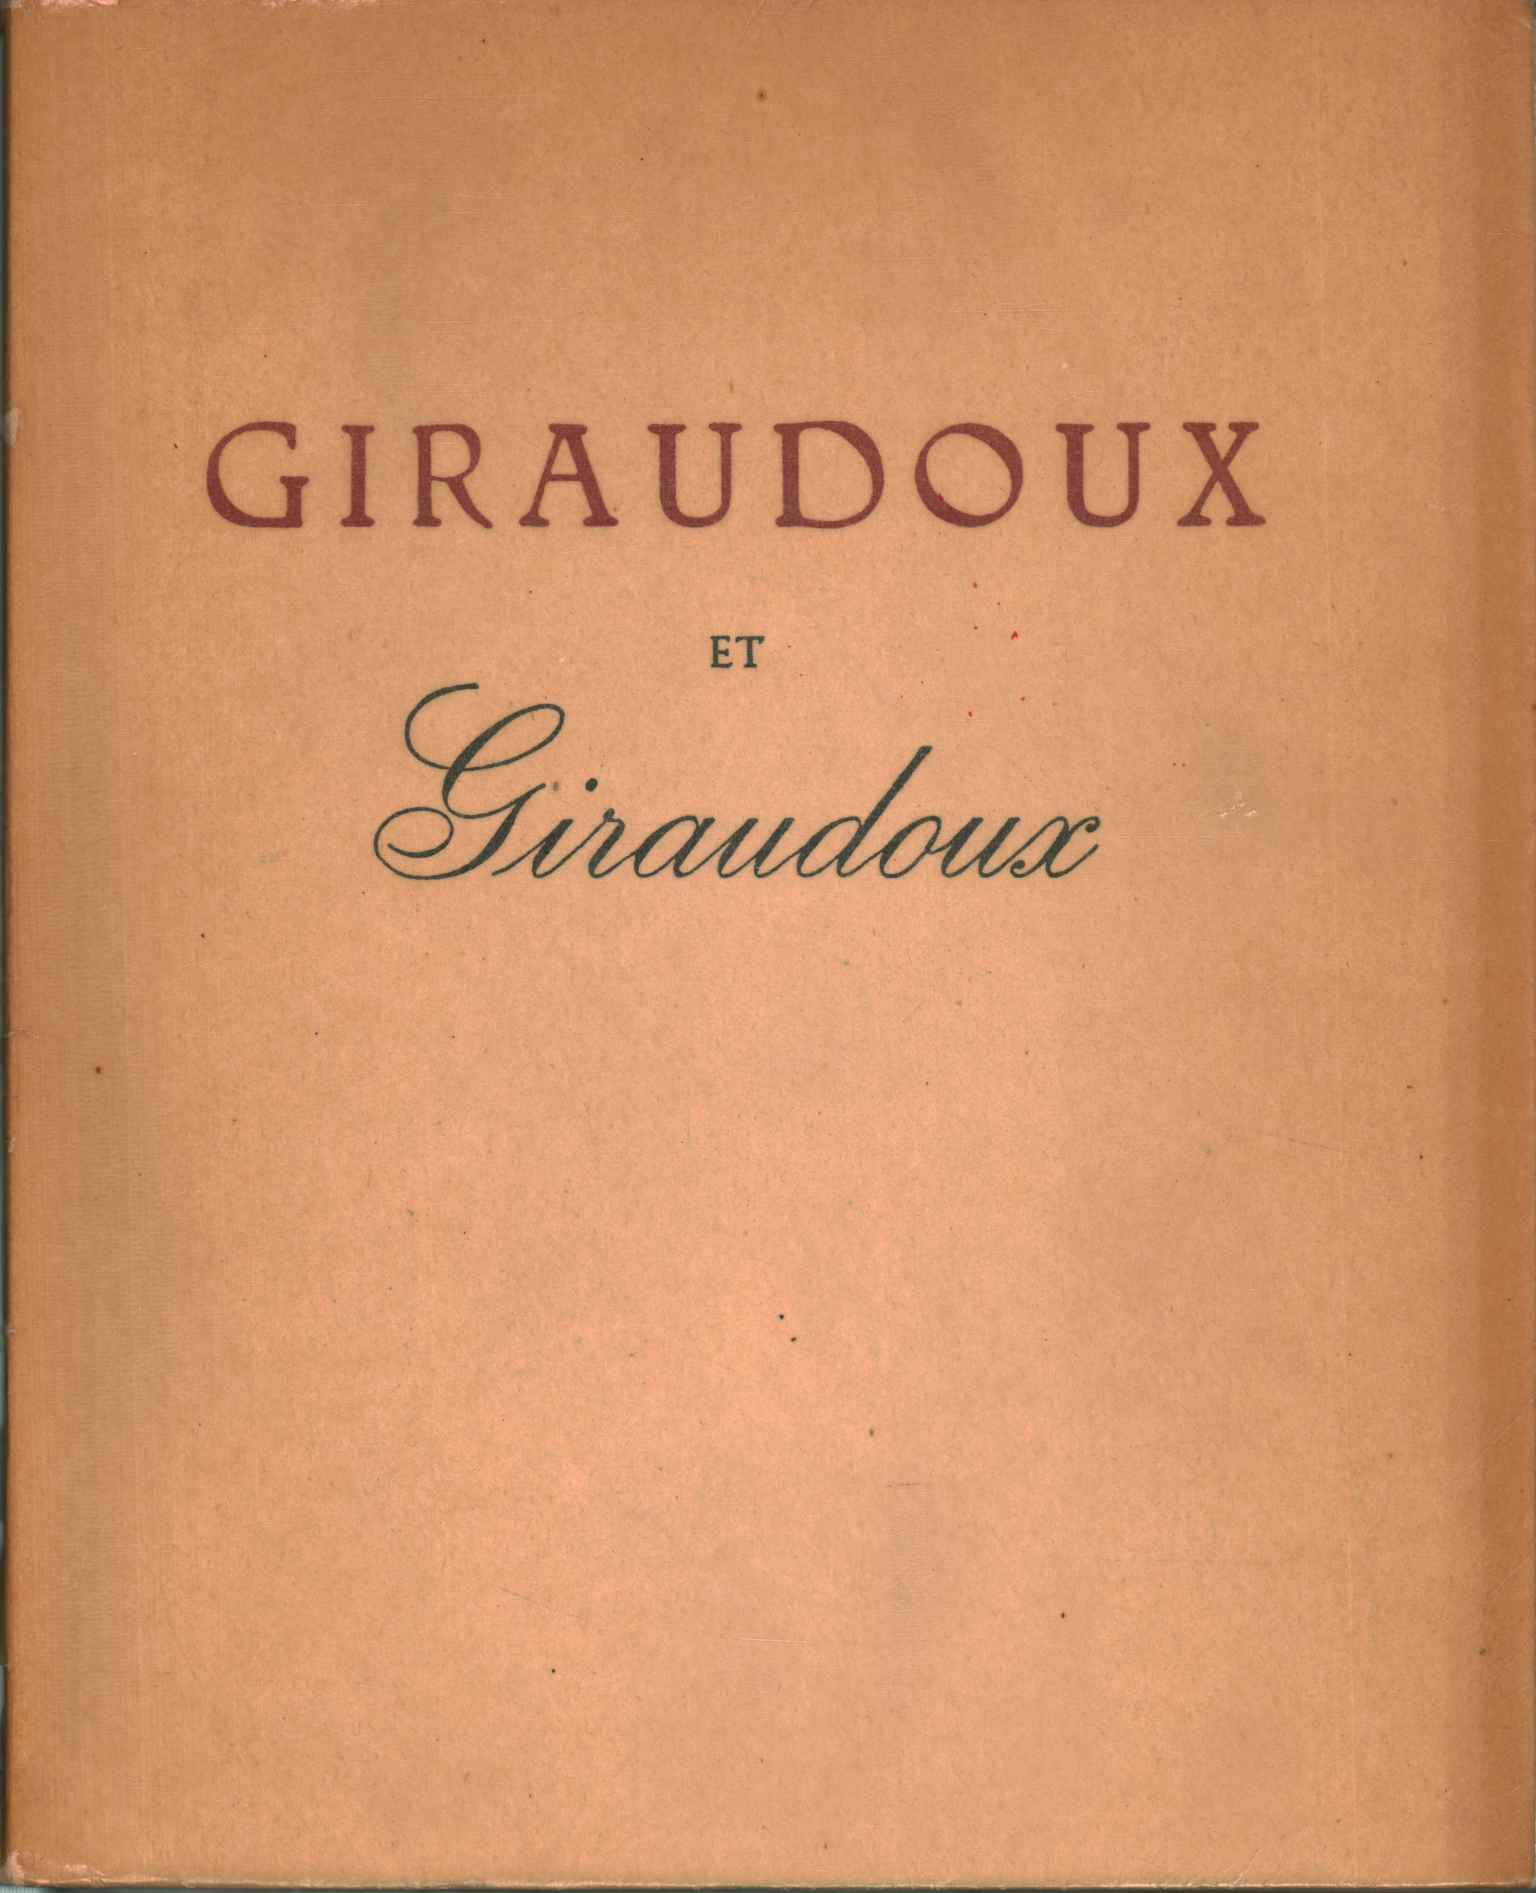 Giraudoux y giraudoux